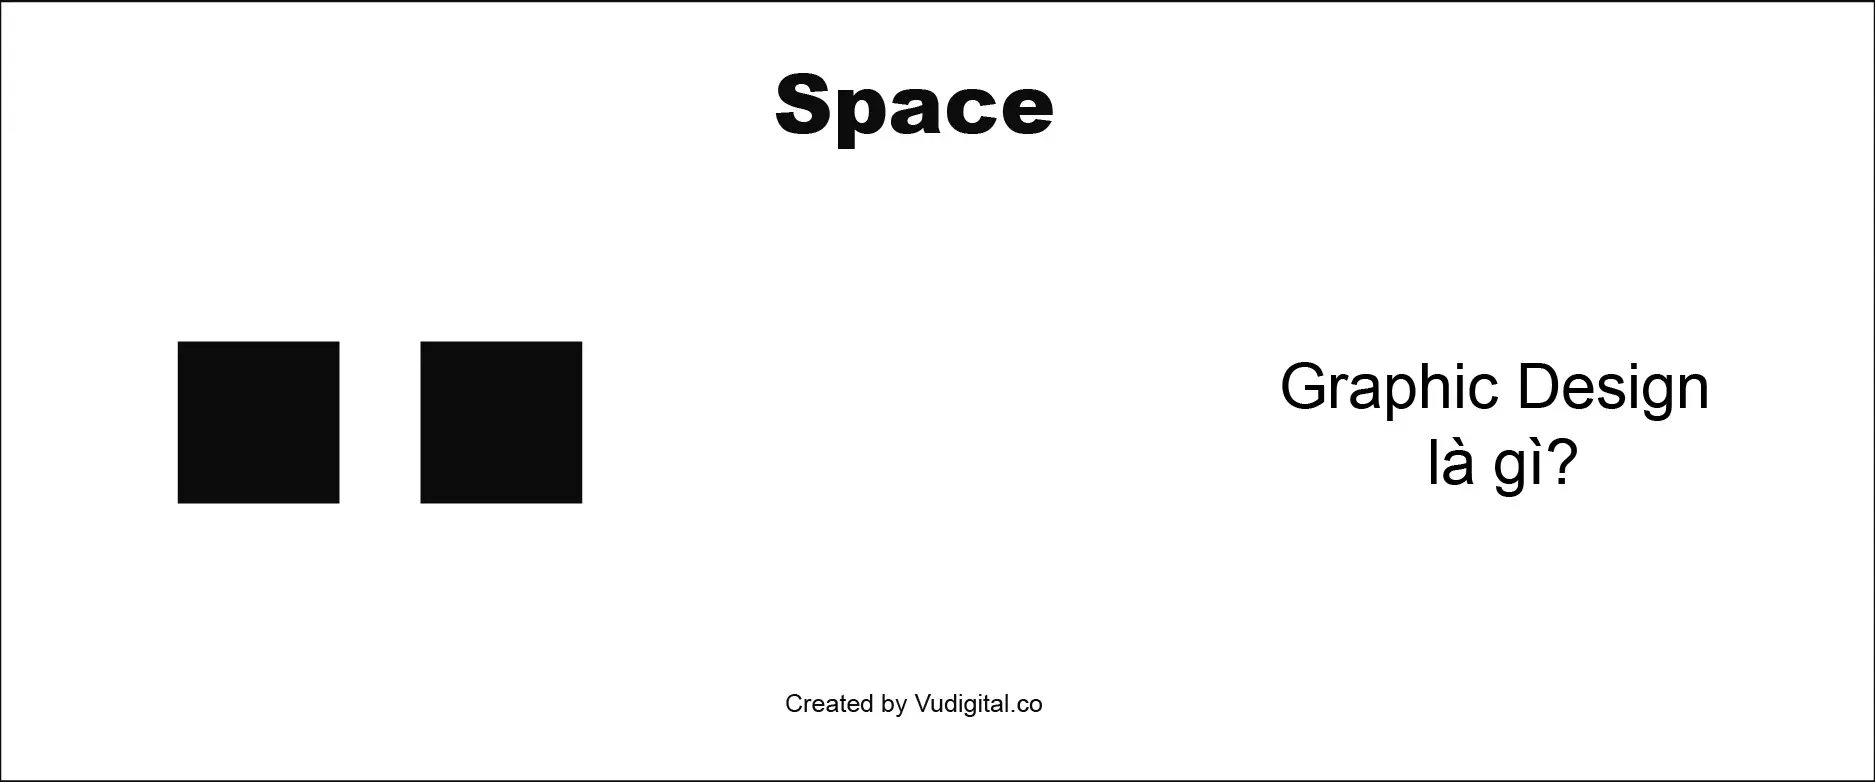 Graphic Design là gì: Yếu tố không gian - toàn bộ phần màu trắng trong ảnh sẽ được hiểu là không gian trống của thiết kế (ảnh: vudigital.co)